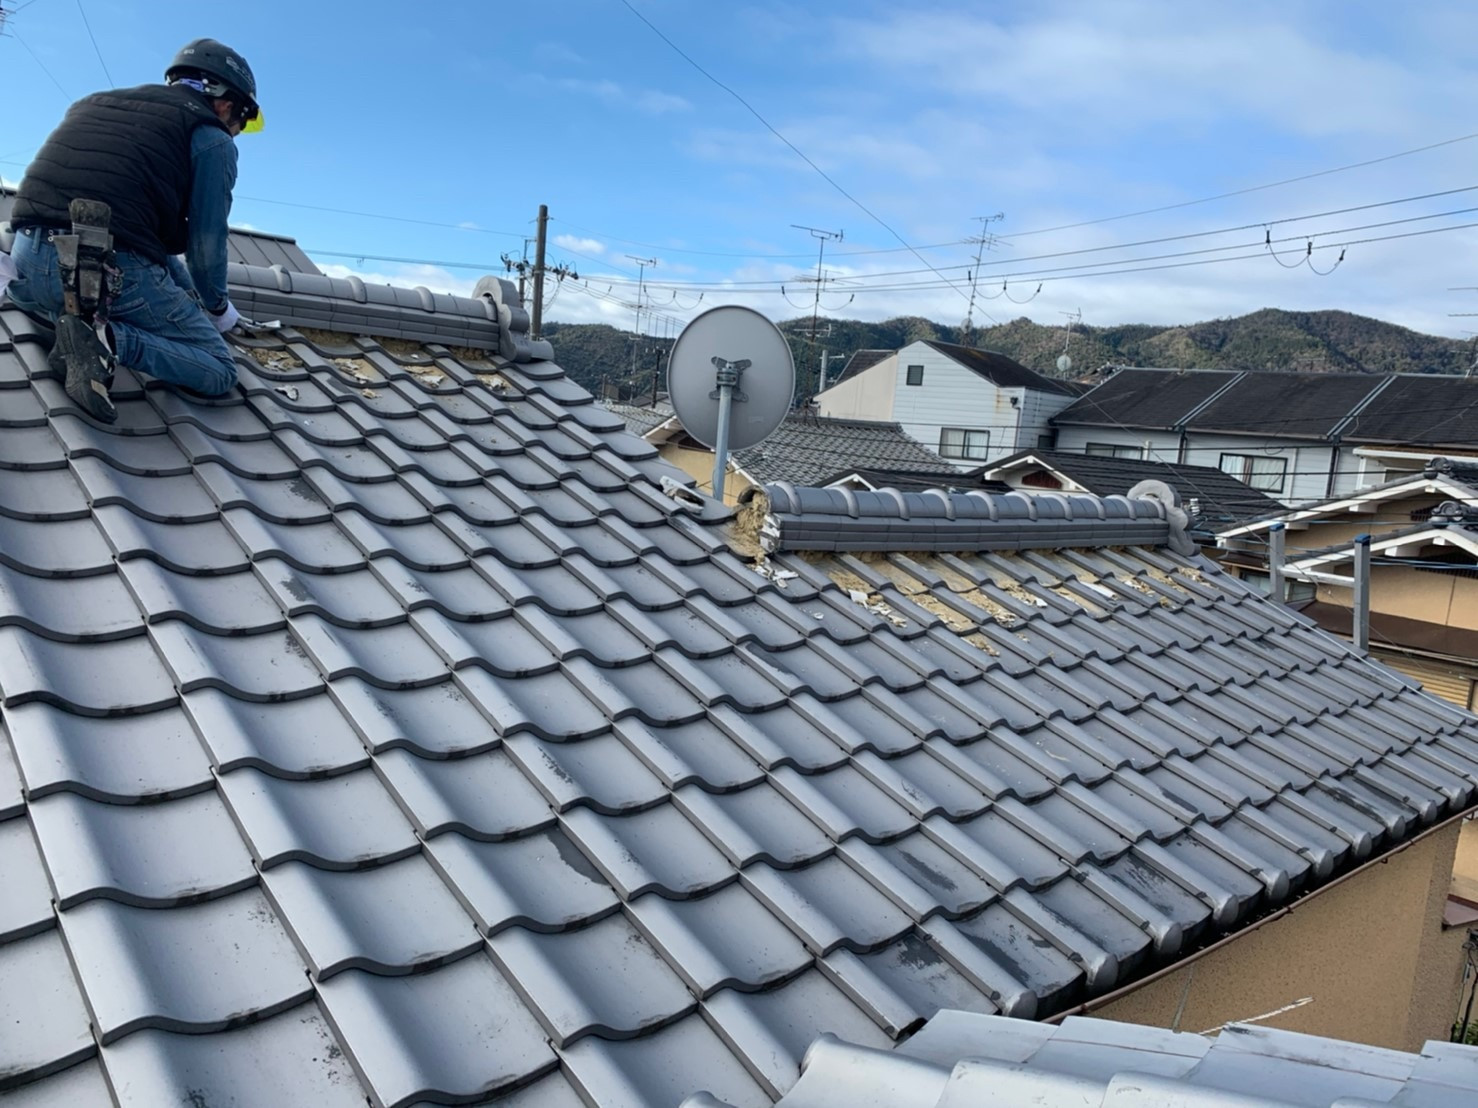 摂津市で屋根業者をお探しならテンカウントにお任せください。地域最安値の見積もり相談無料。リフォームの事なら屋根の匠テンカウントまで。